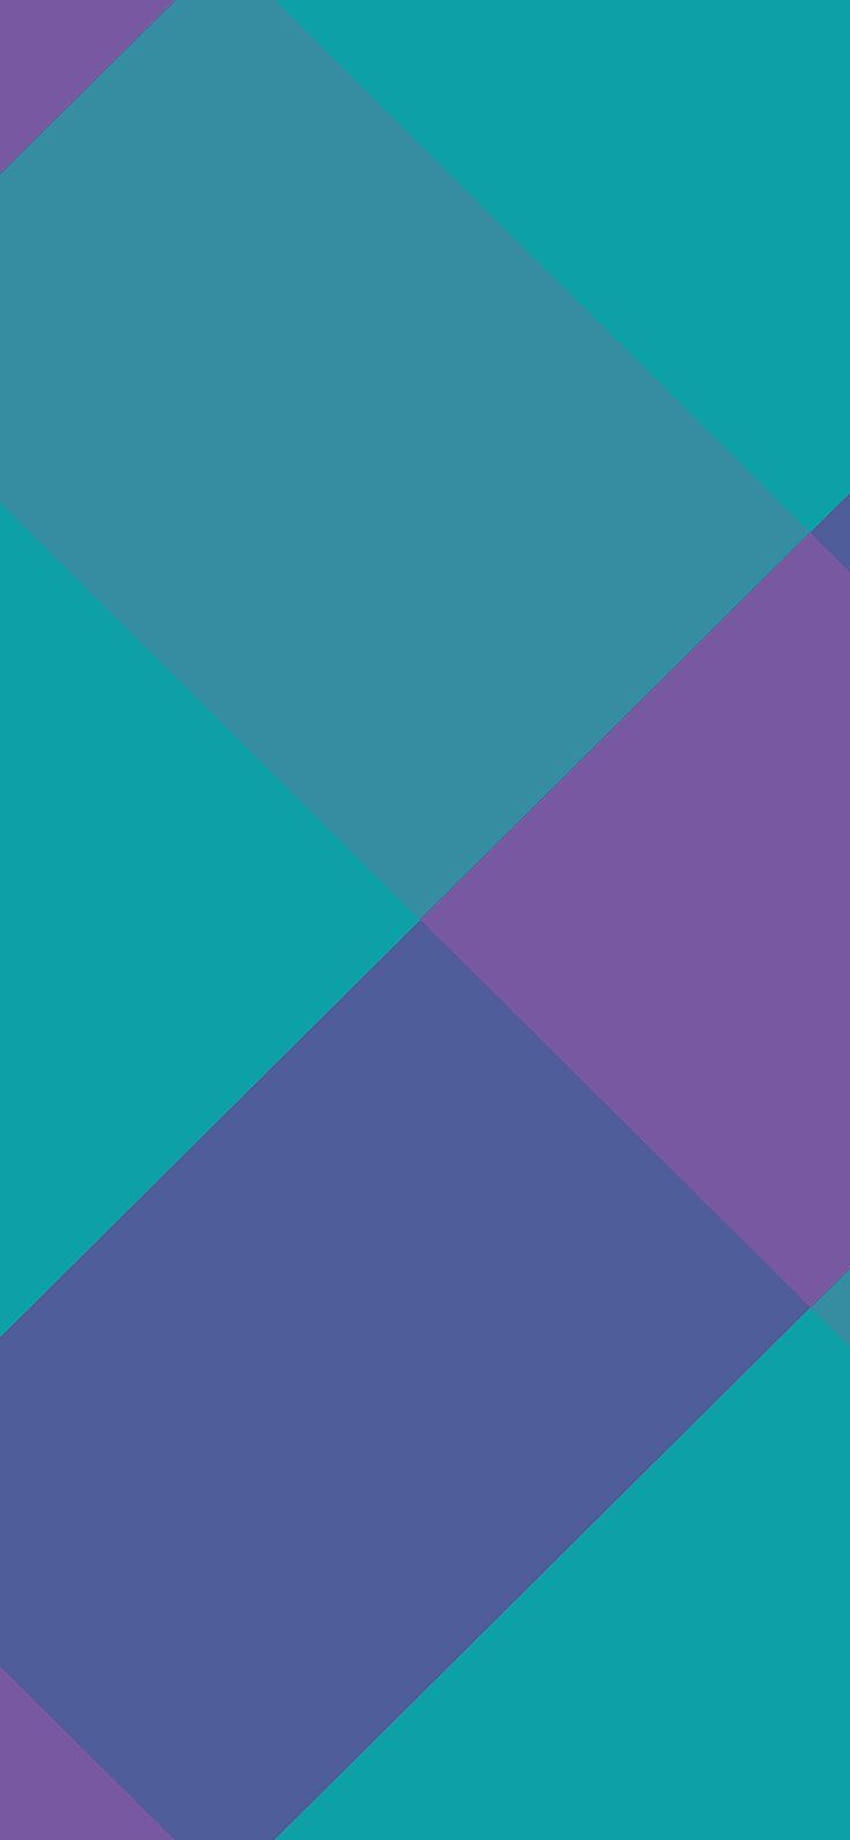 iPhone X : 紫青の四角形の抽象的な線 HD電話の壁紙